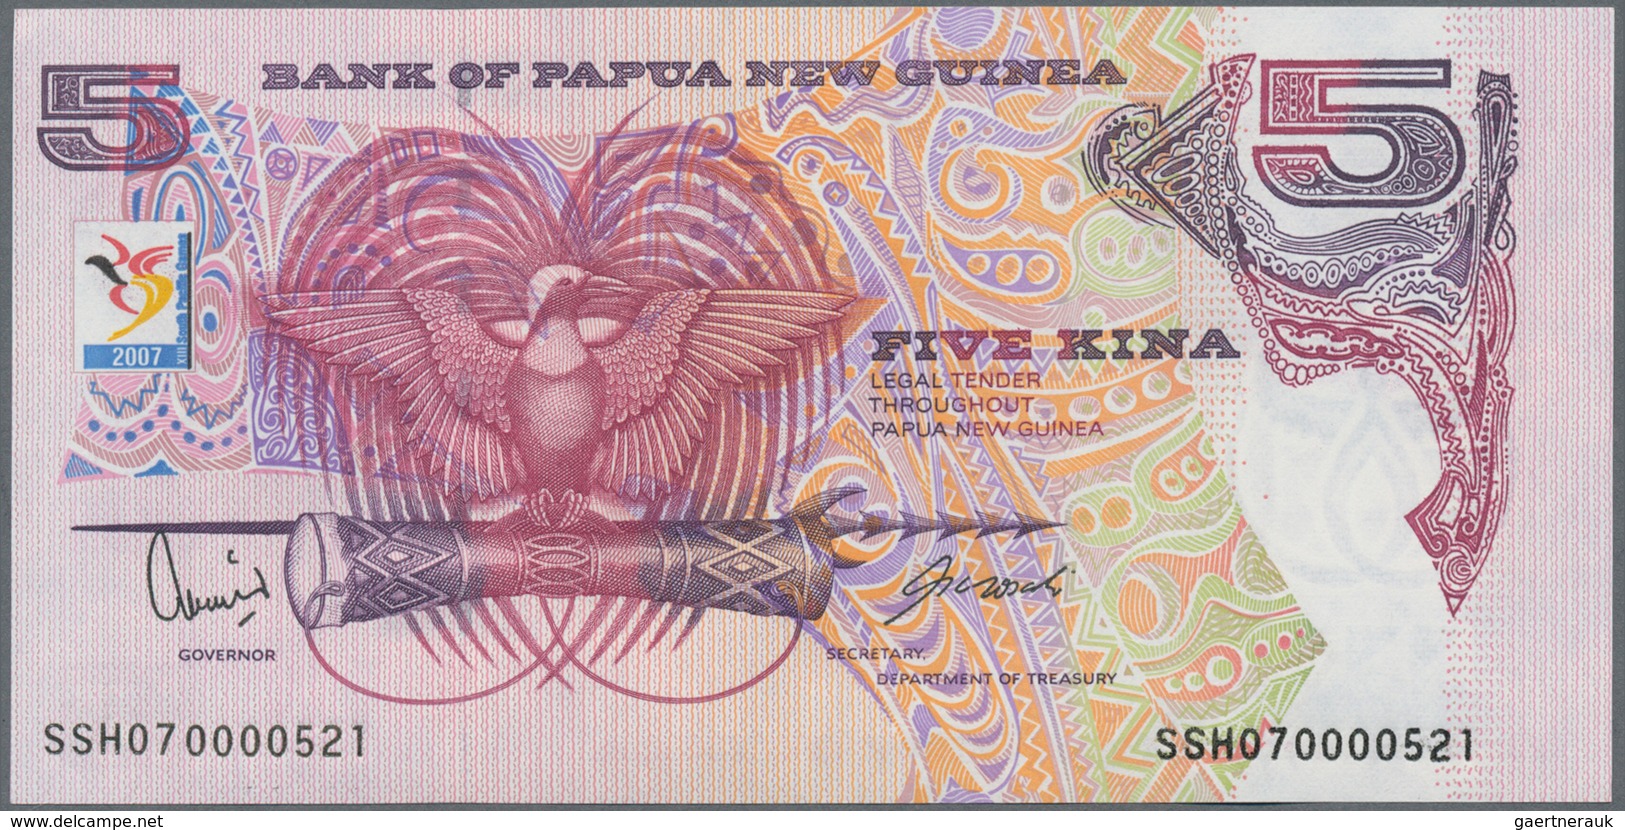 Papua New Guinea: Huge lot with 1225 banknotes comprising 100x 2 Kina P.1, 100x 2 Kina P.5a, 110 pcs